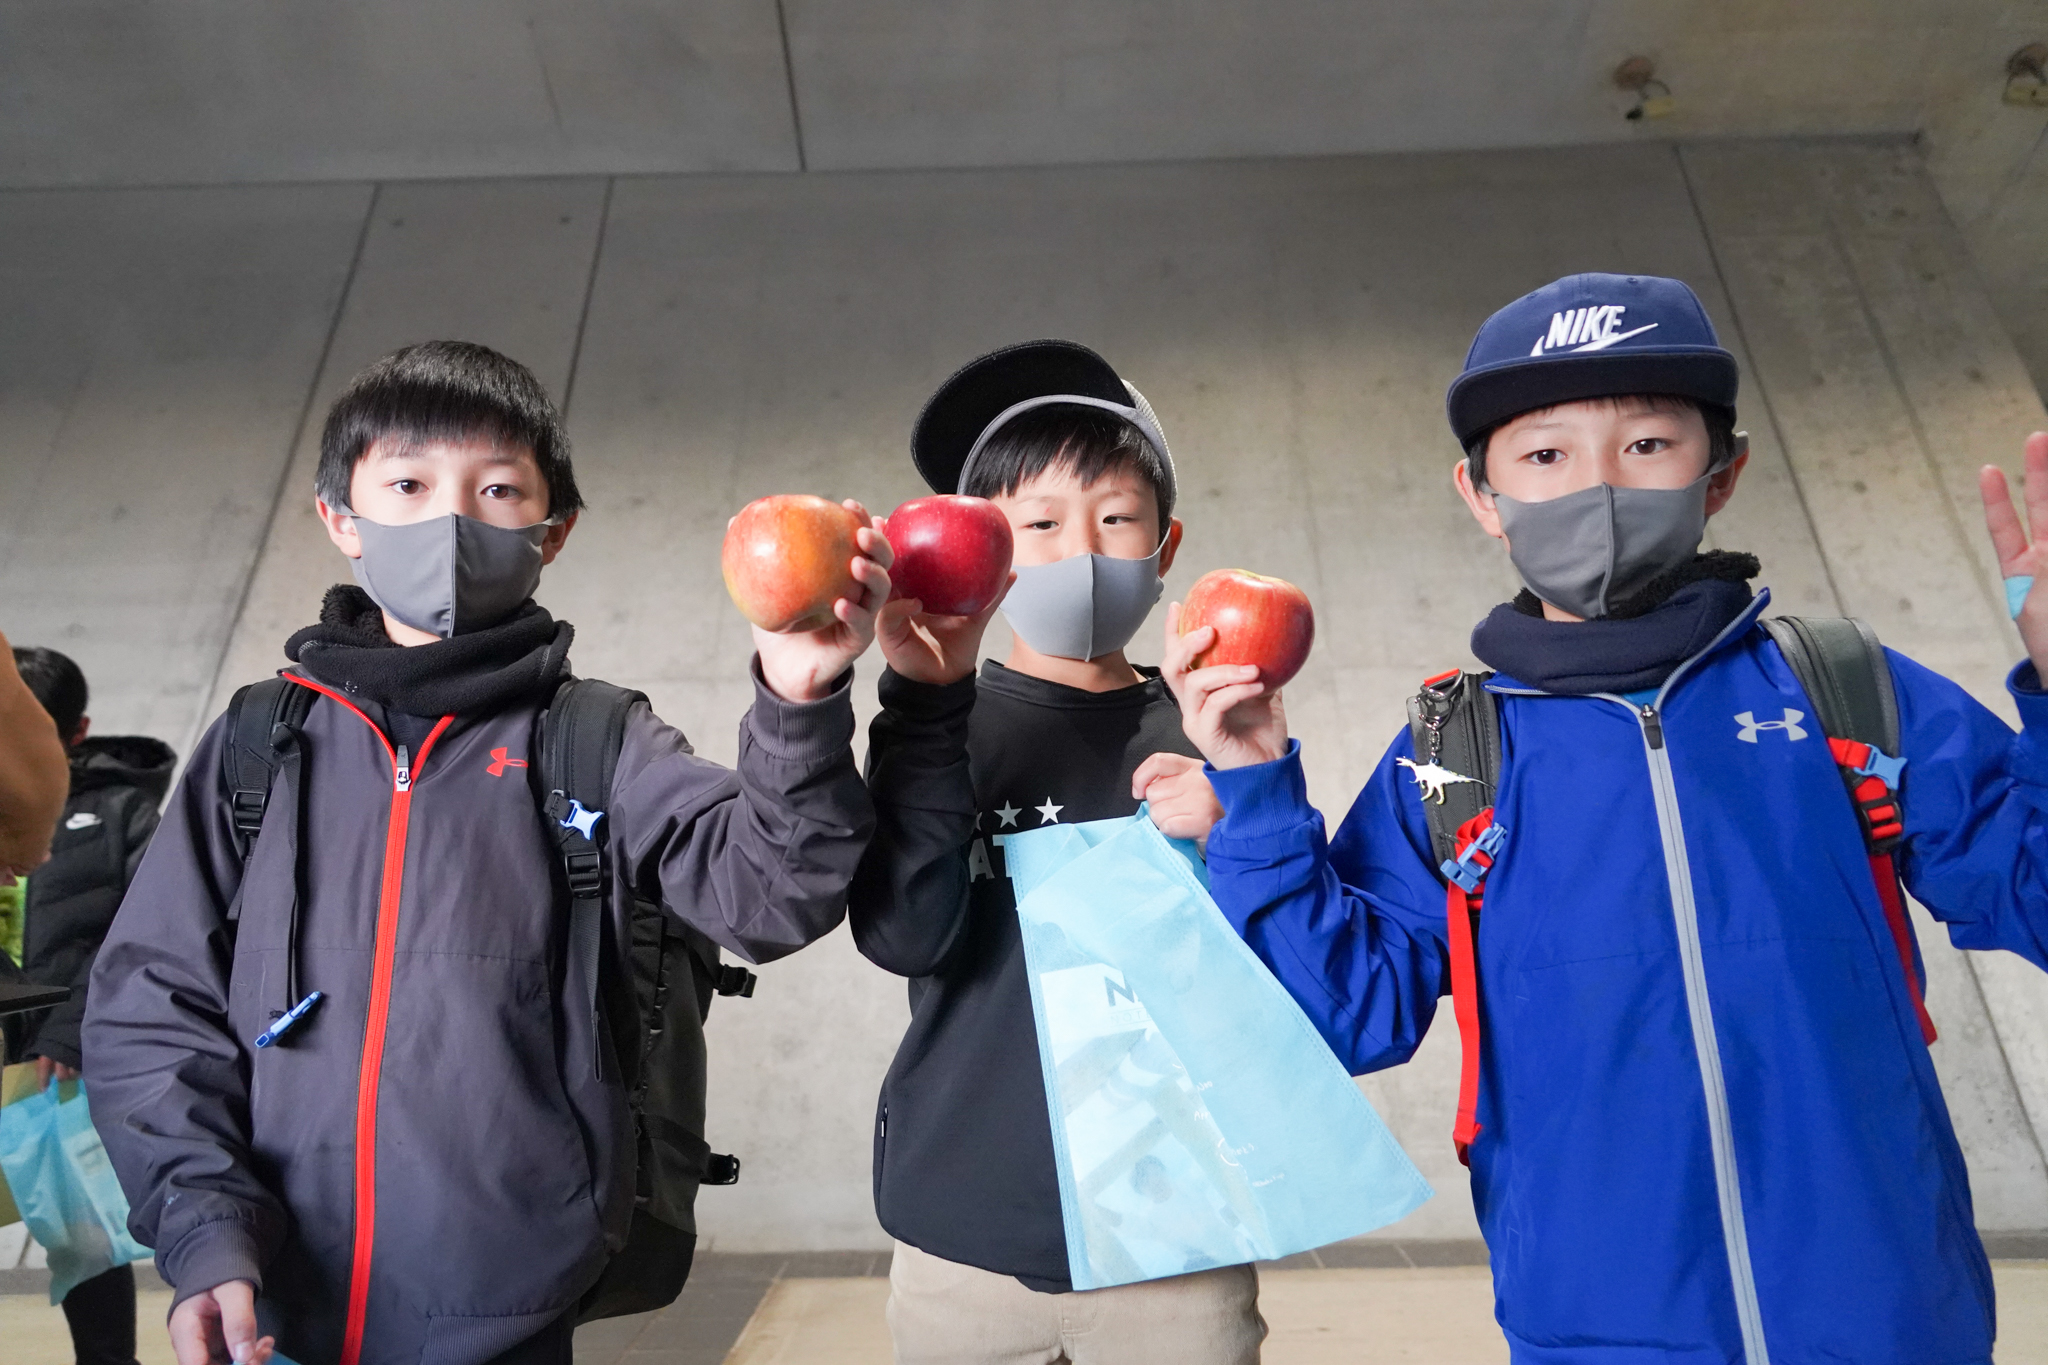 小平選手からのサプライズ「リンゴ」を手にする子どもたち